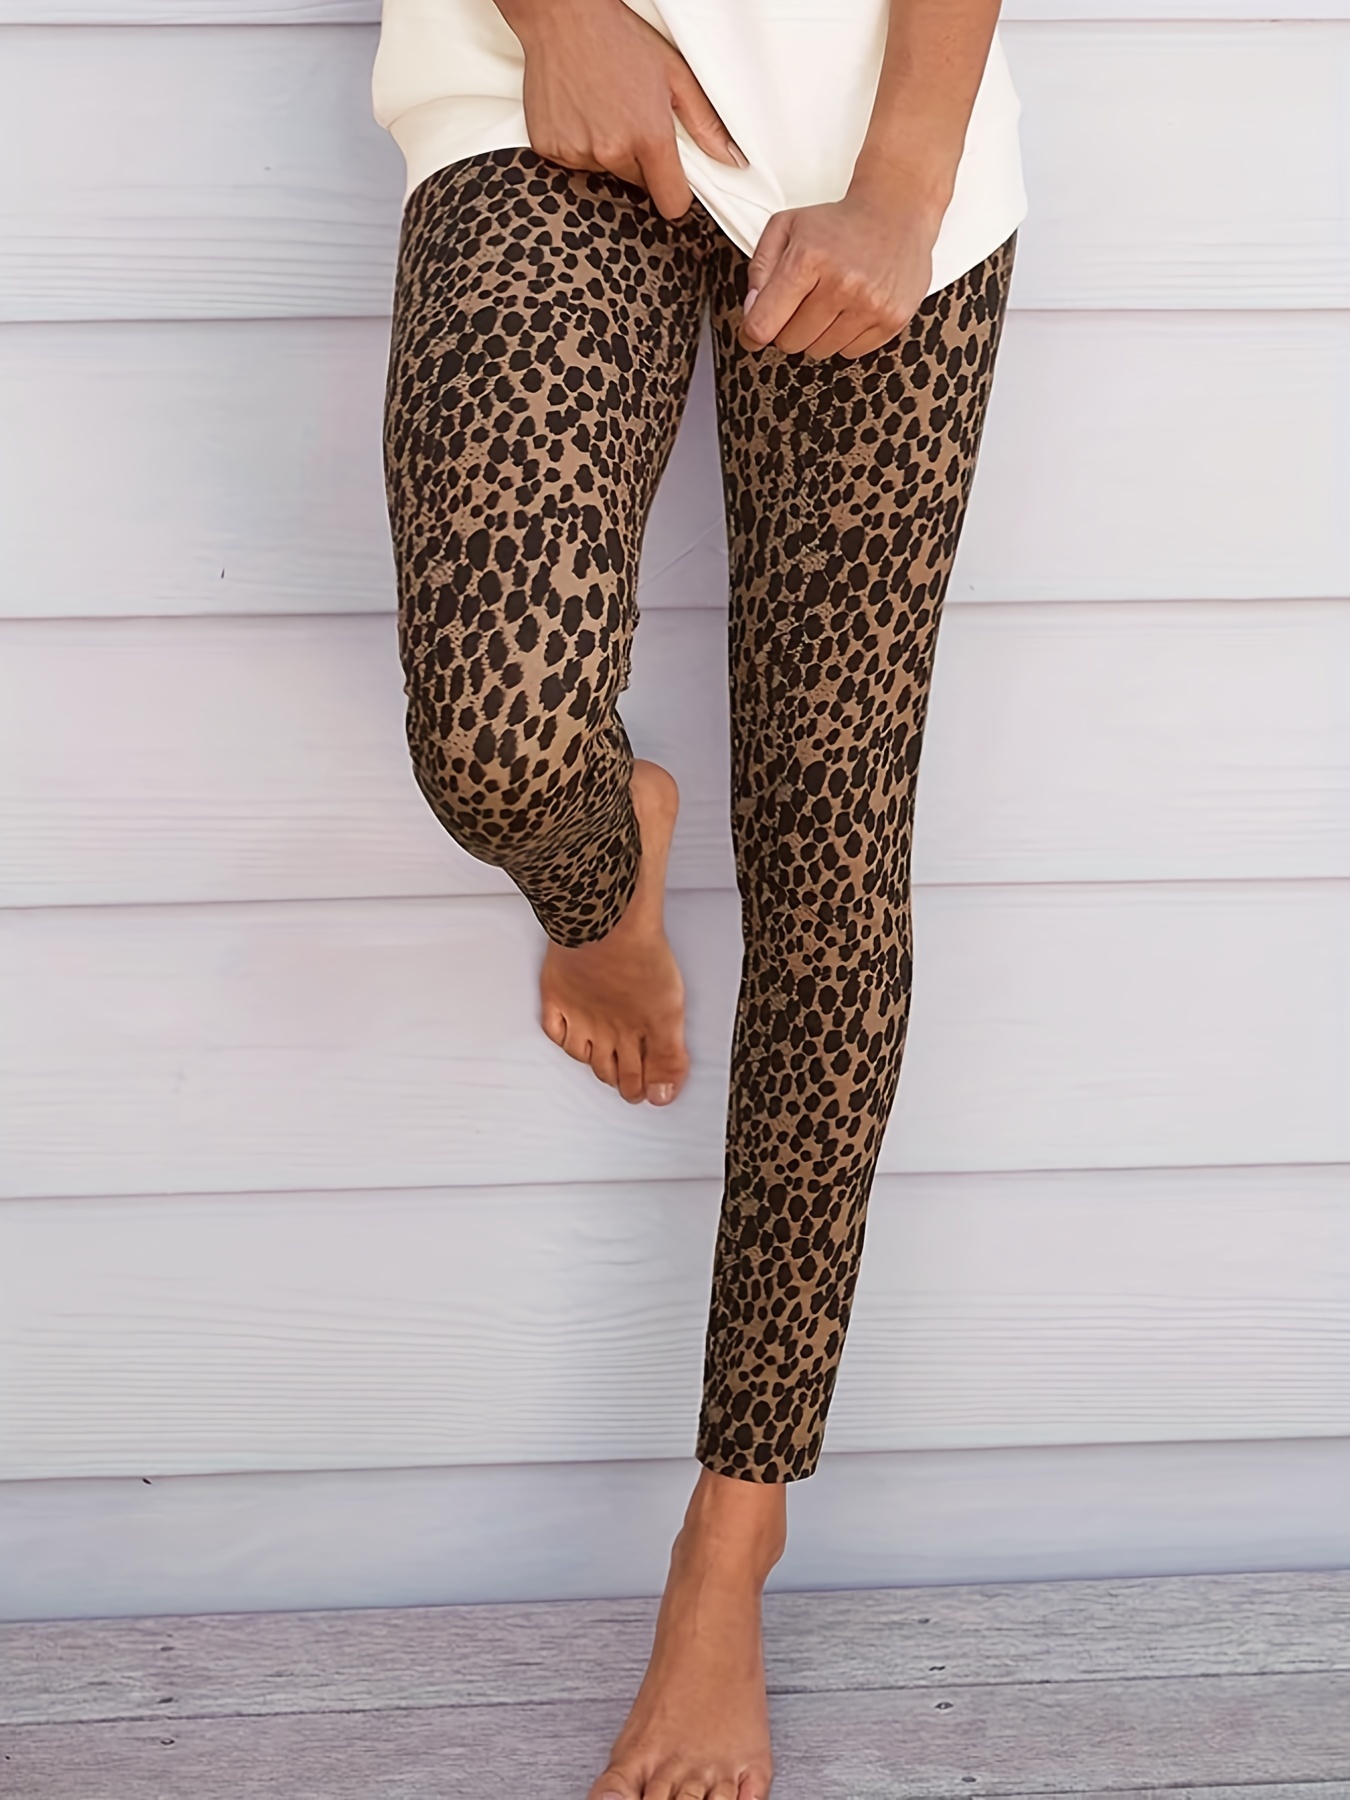 * Leopard Print Leggings, Skinny Workout Leggings, Ankle-length High Waist  Casual Leggings, Women's Clothing